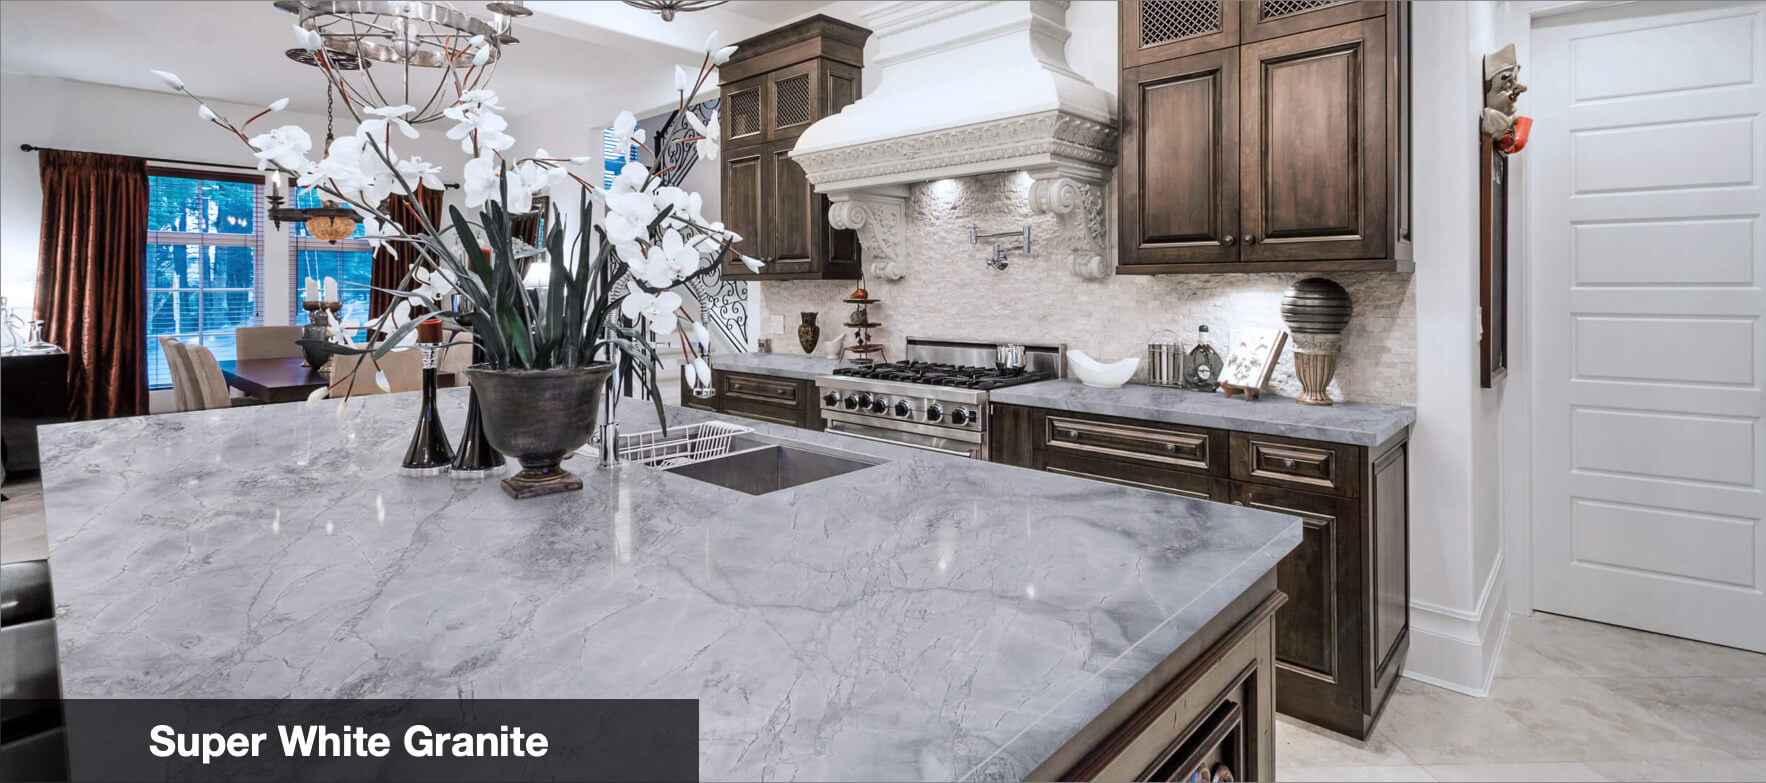 white granite countertops tampa fl cost